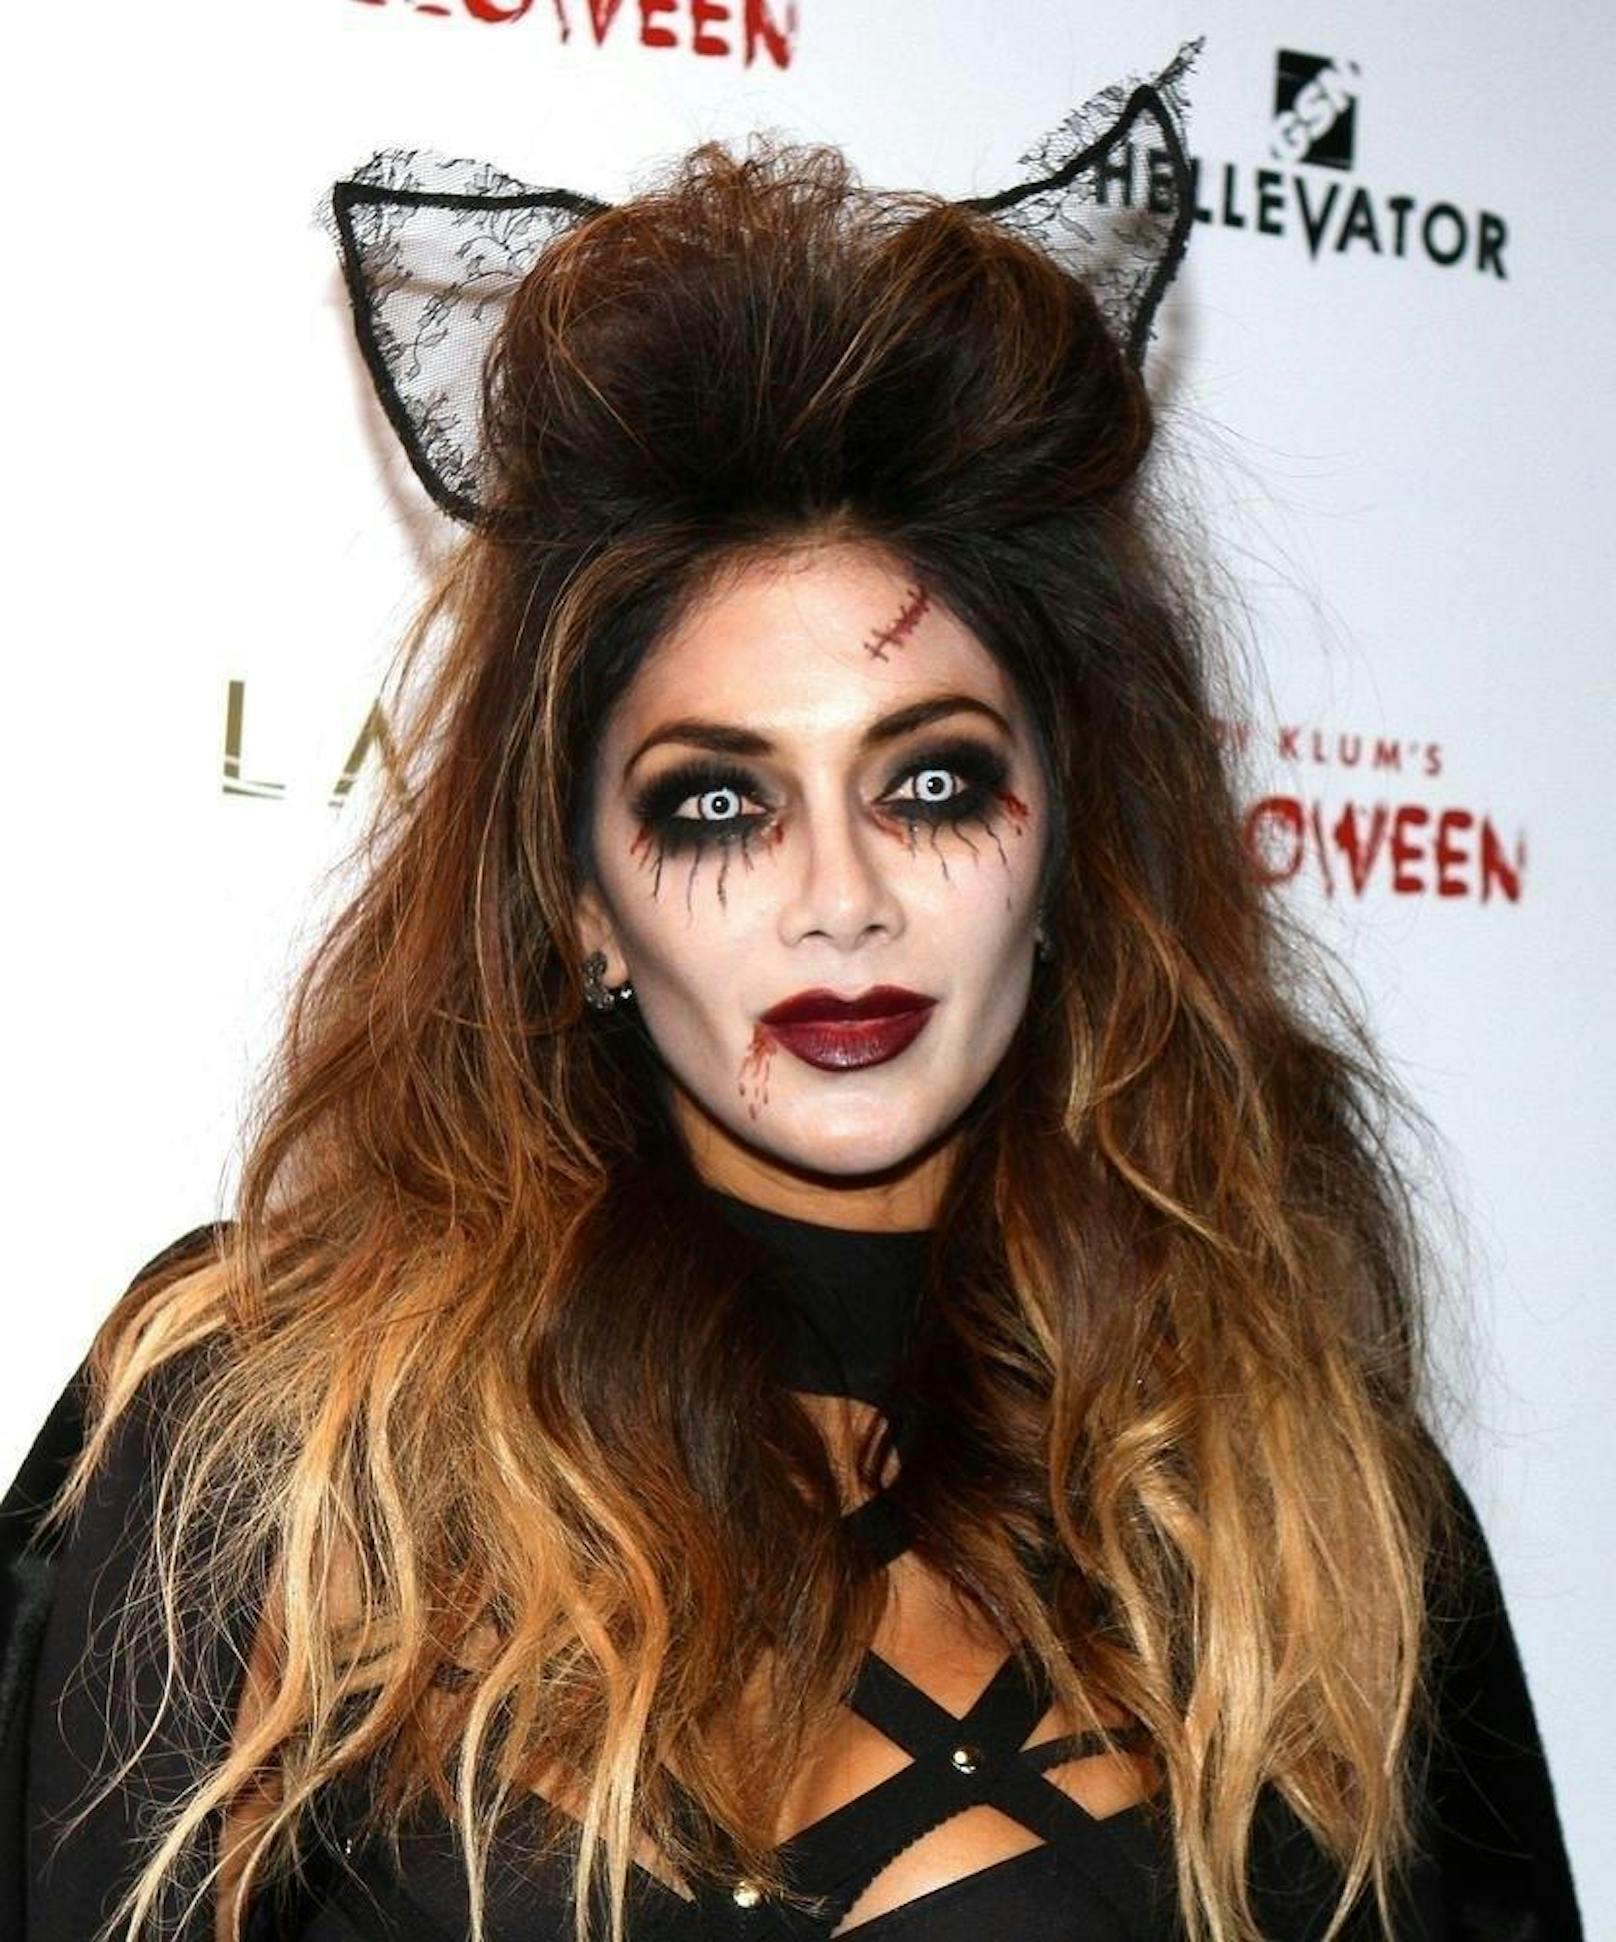 Gruseliger Scherz(-inger): Nicole zu Halloween 2015 als "Geister-Katze"?!?